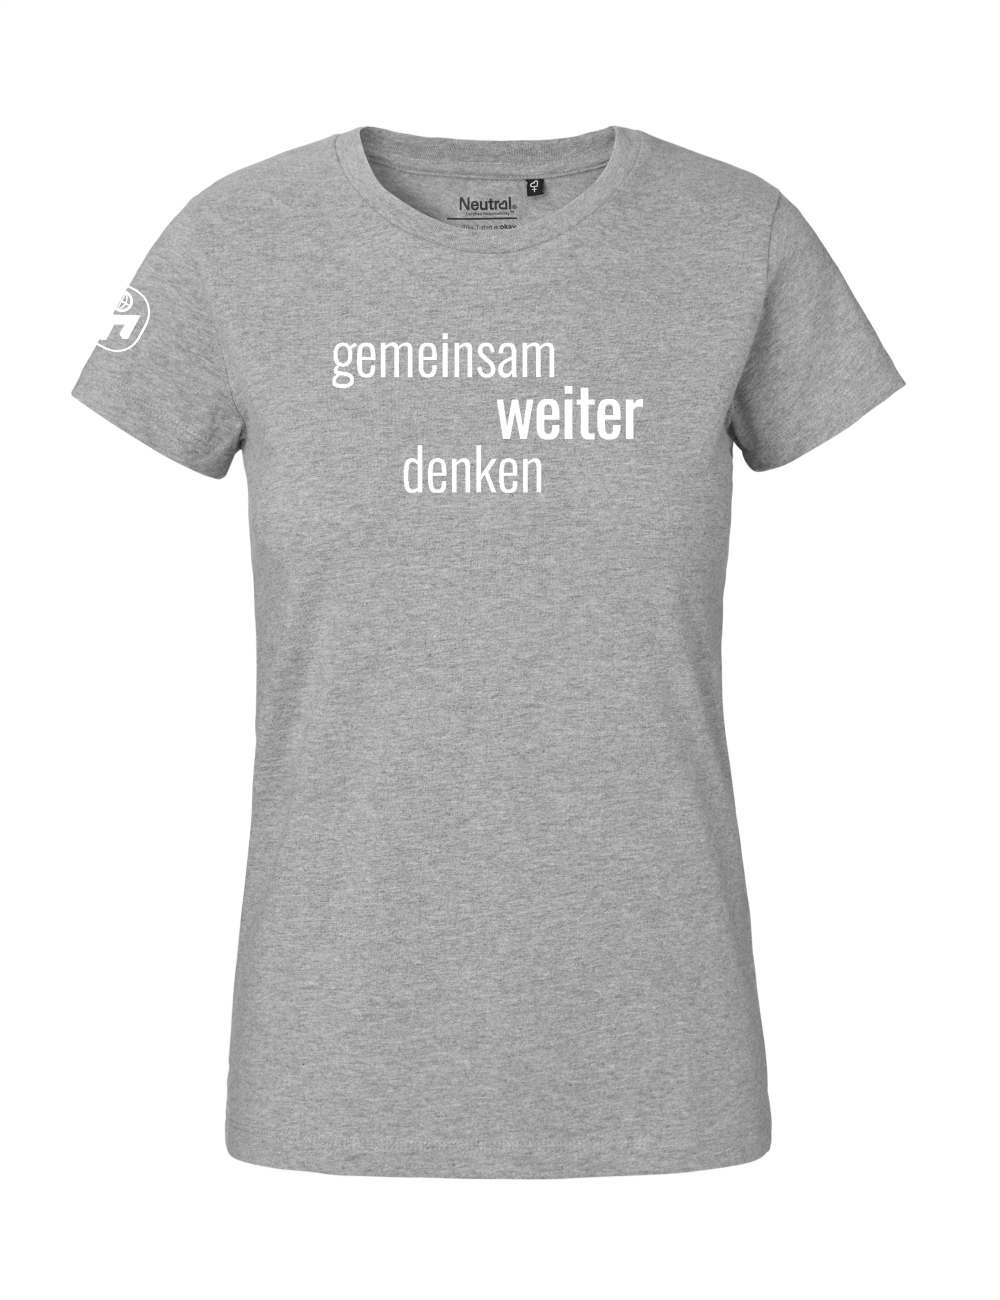 T-Shirt Damen "Gemeinsam weiter denken" Premium